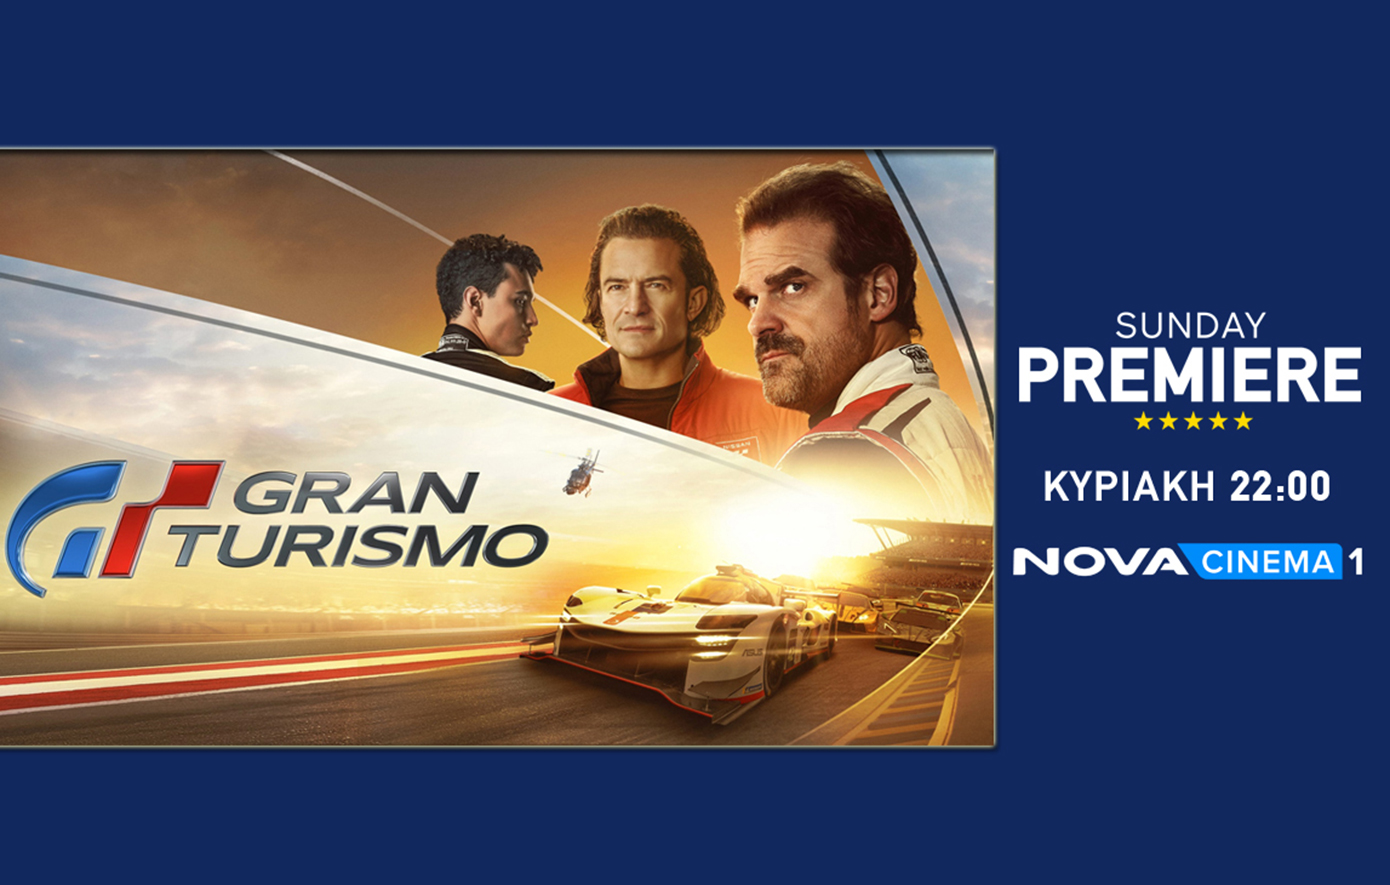 Η αληθινή ιστορία «Gran Turismo» έρχεται… σπιντάτη στη ζώνη Sunday Premiere της Nova!